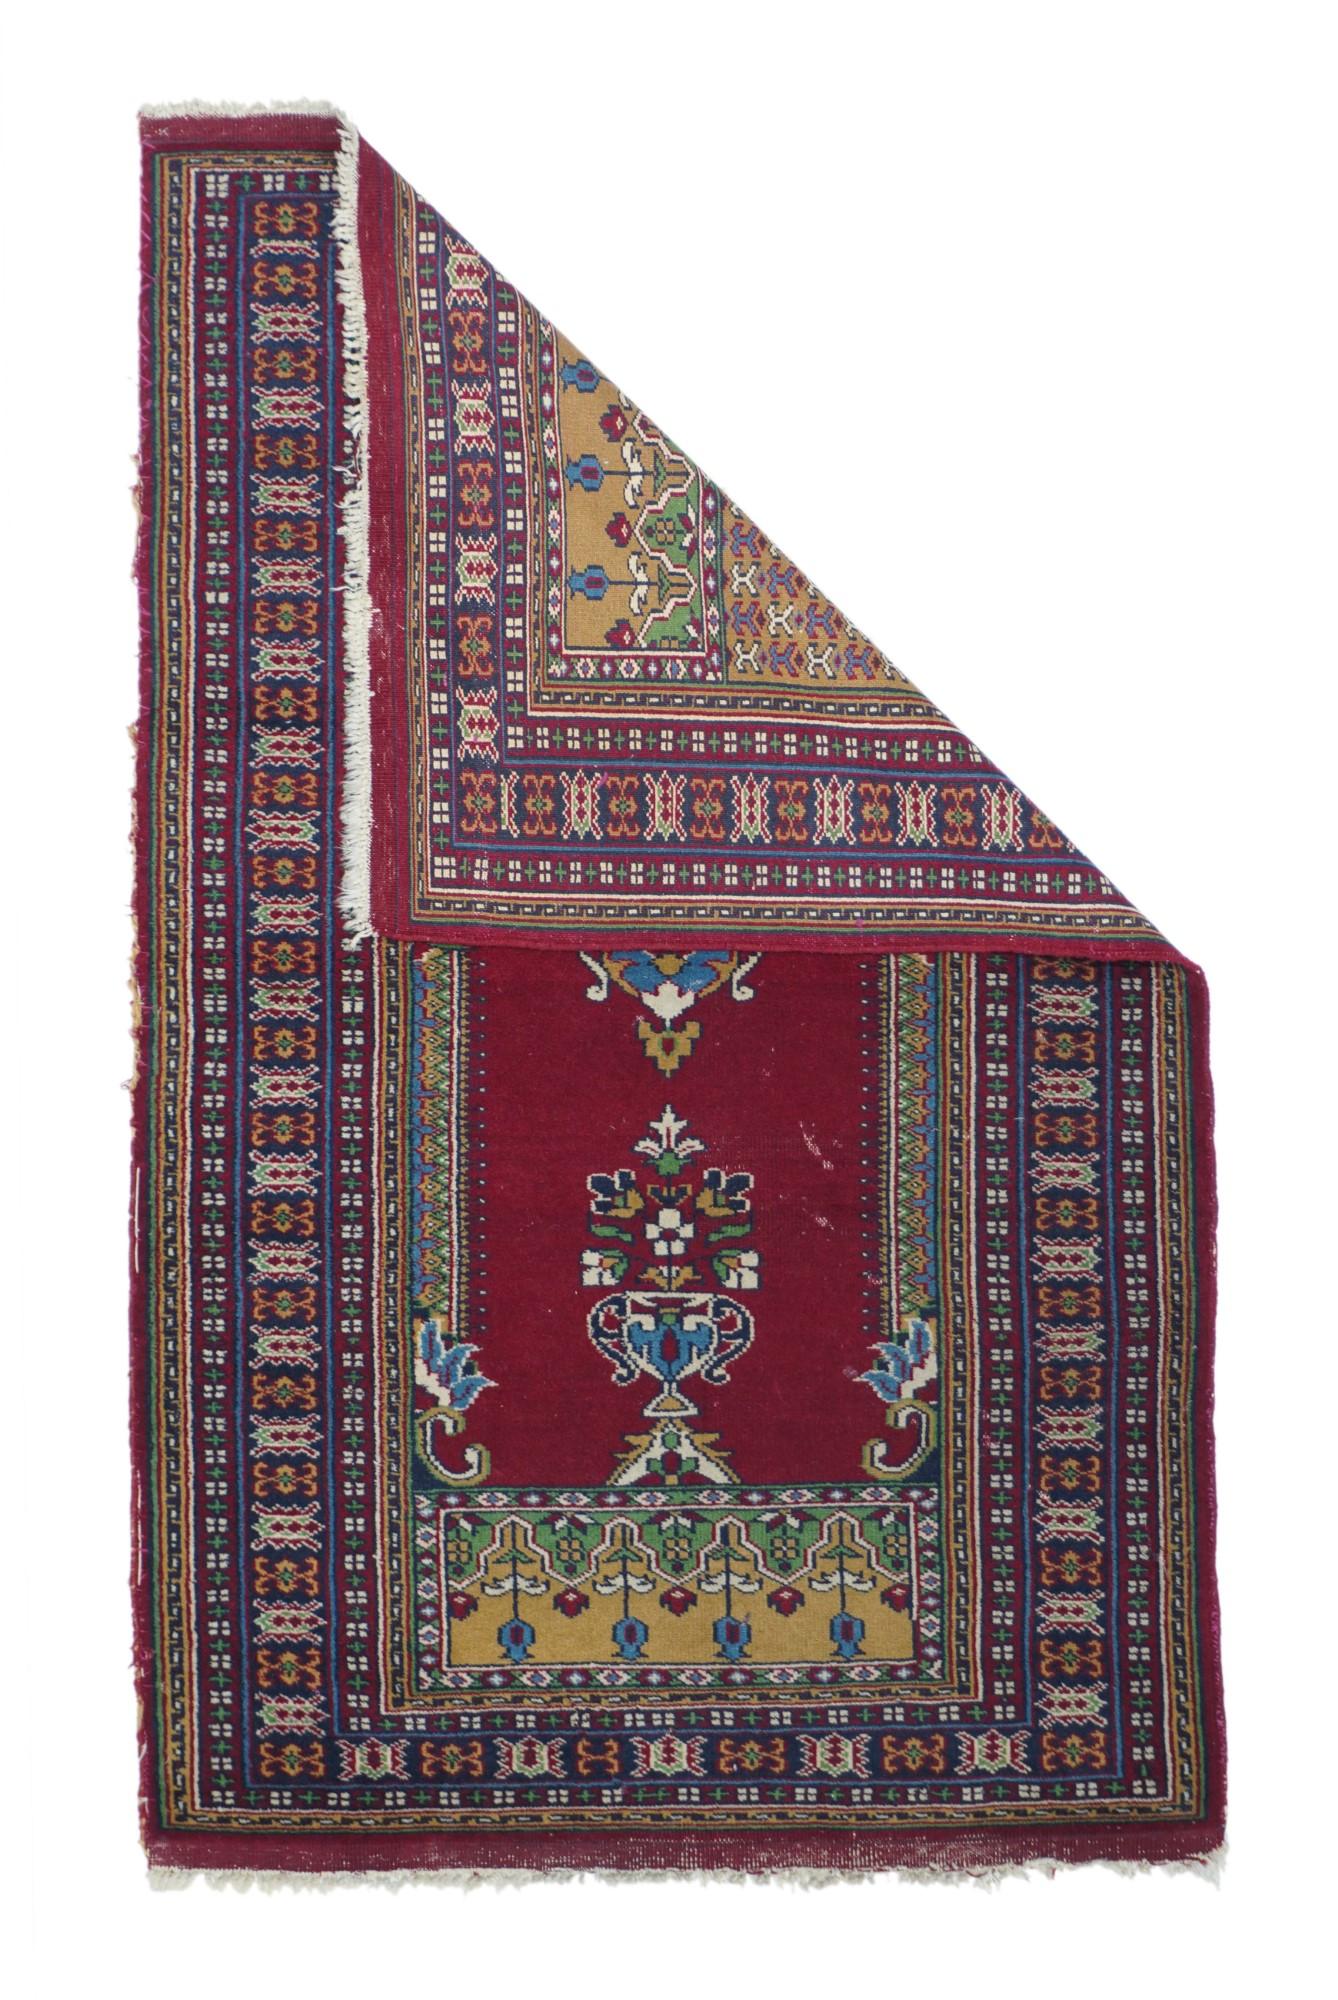 Bokhara-Teppich 2'7'' x 4'3''. Allgemeiner türkischer Ghiordes-Stil mit einer roten, gelappten Nische, die von seitlichen Kolonetten getragen wird, an deren Spitze eine Moschee-Lampe hängt und in deren Mitte sich eine blumengefüllte Vase befindet.